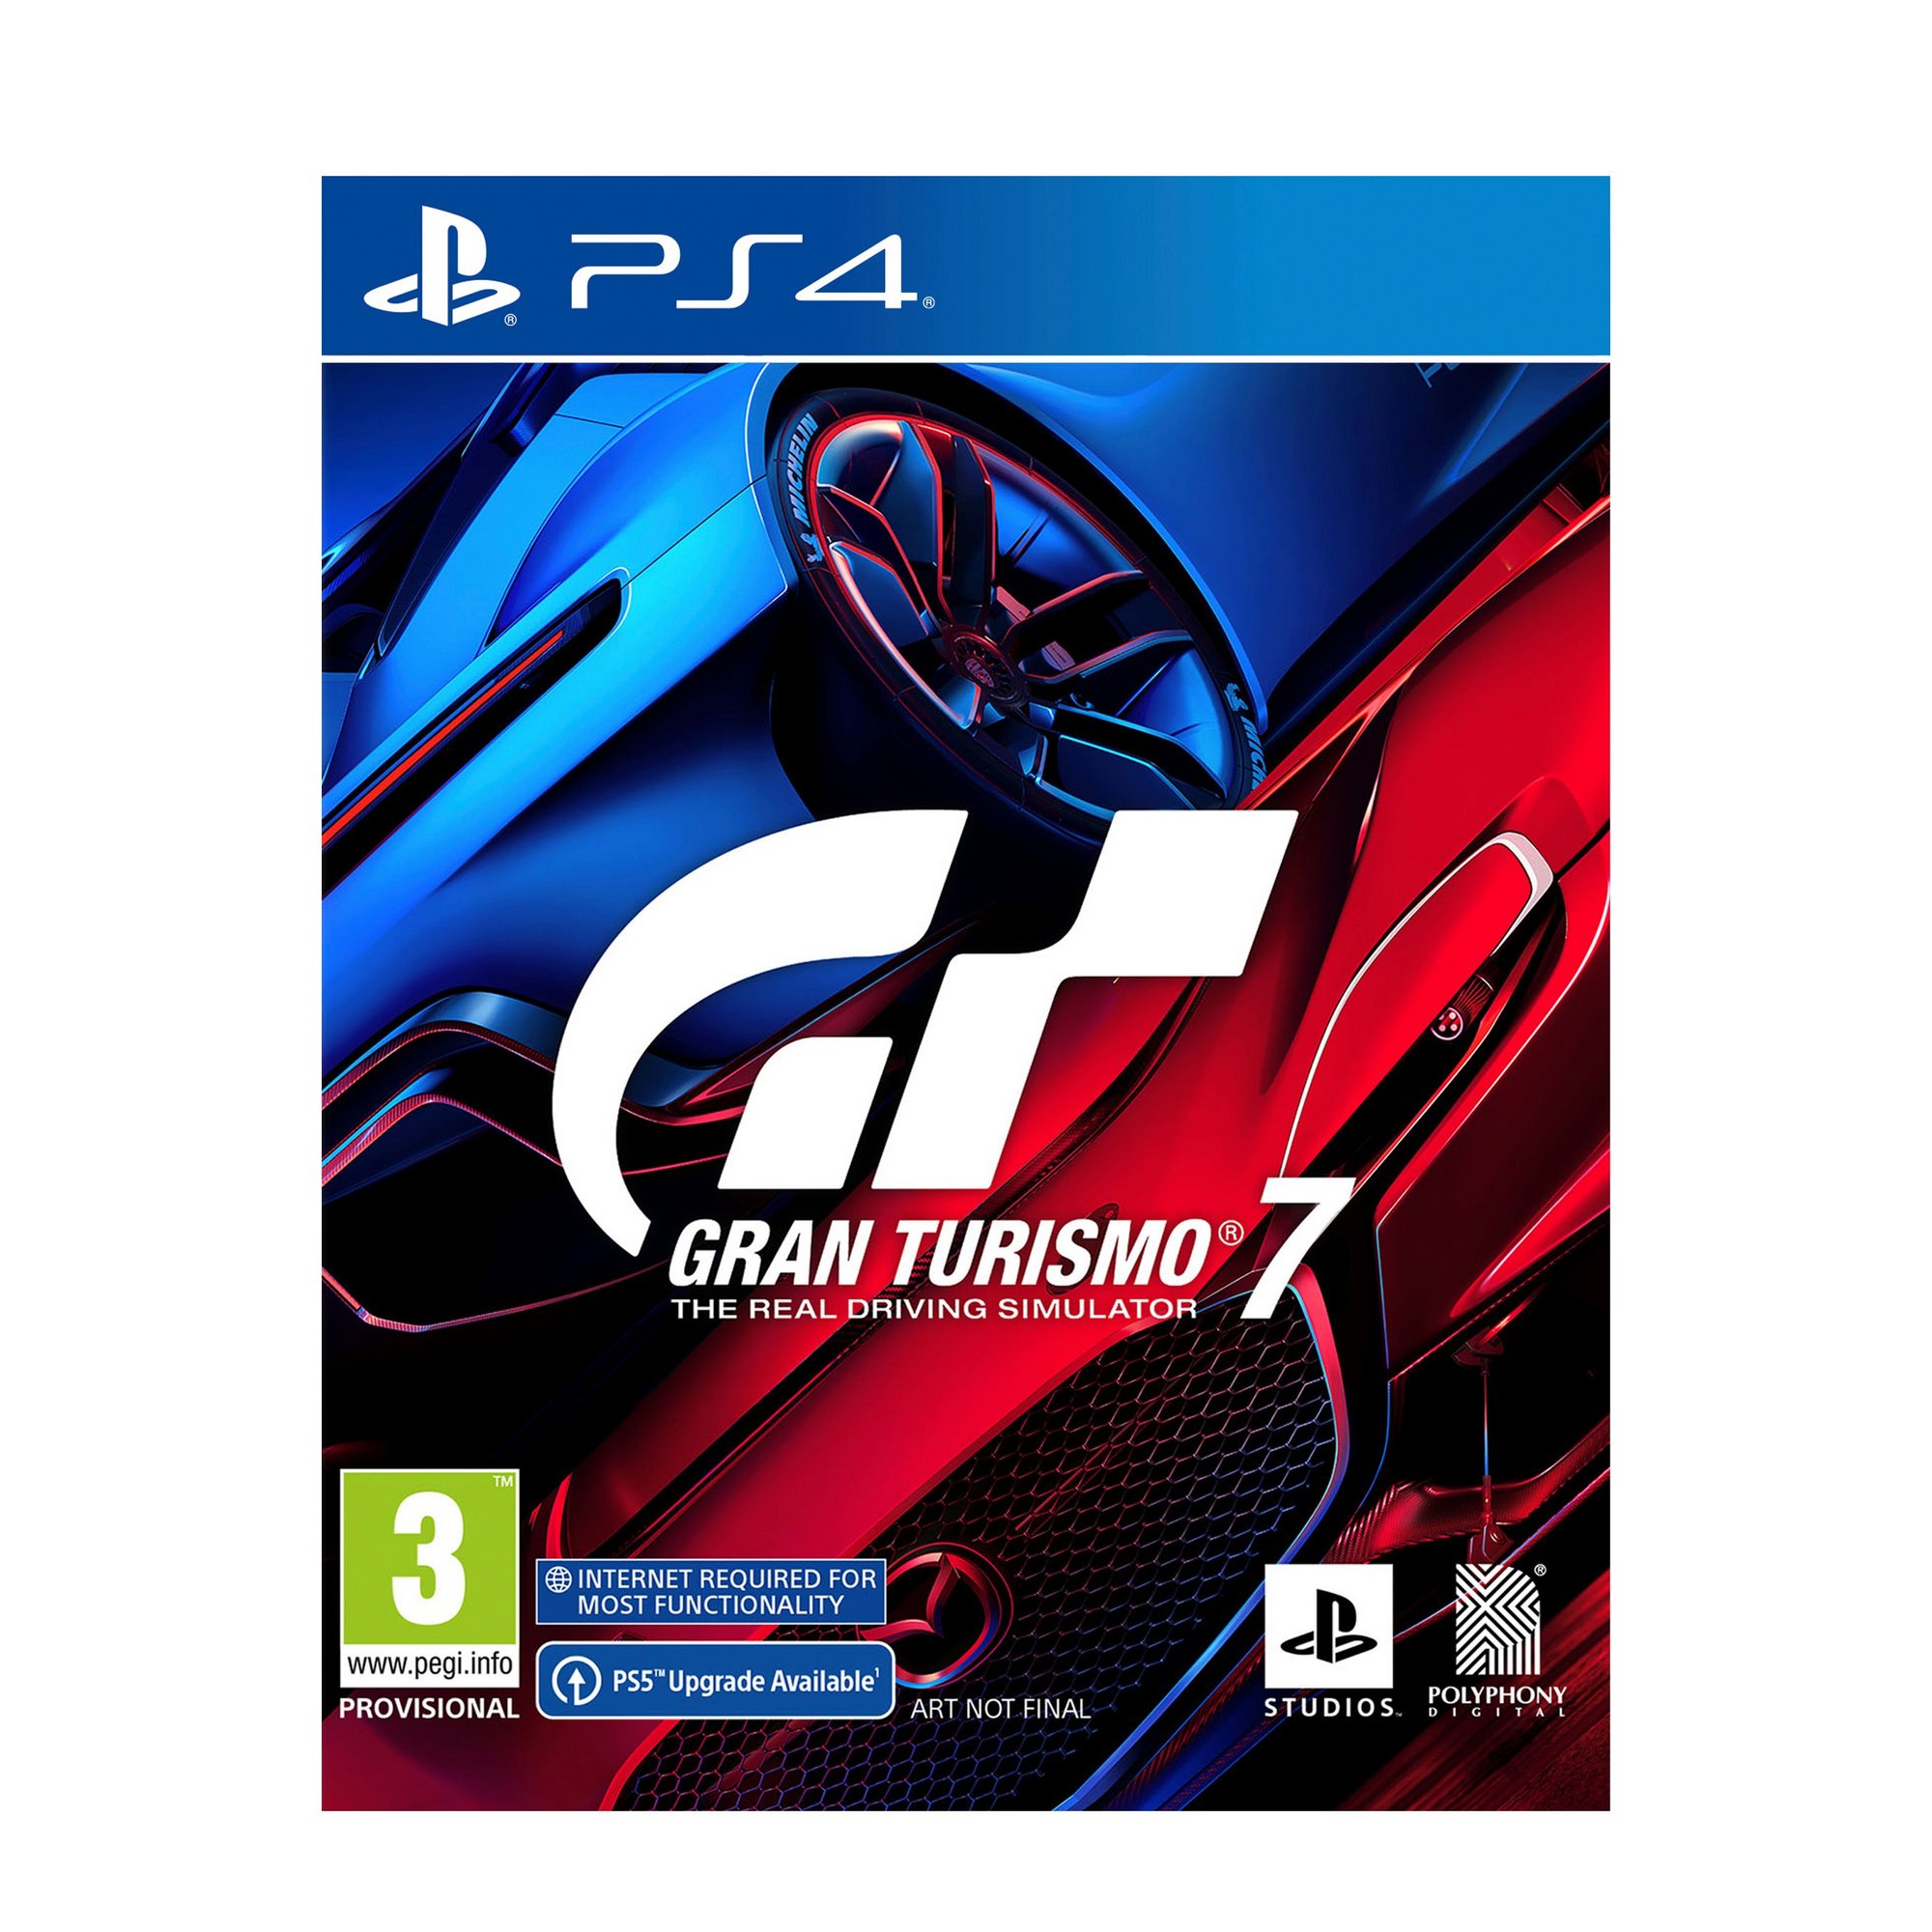 Sony PS4: Gran Turismo 7